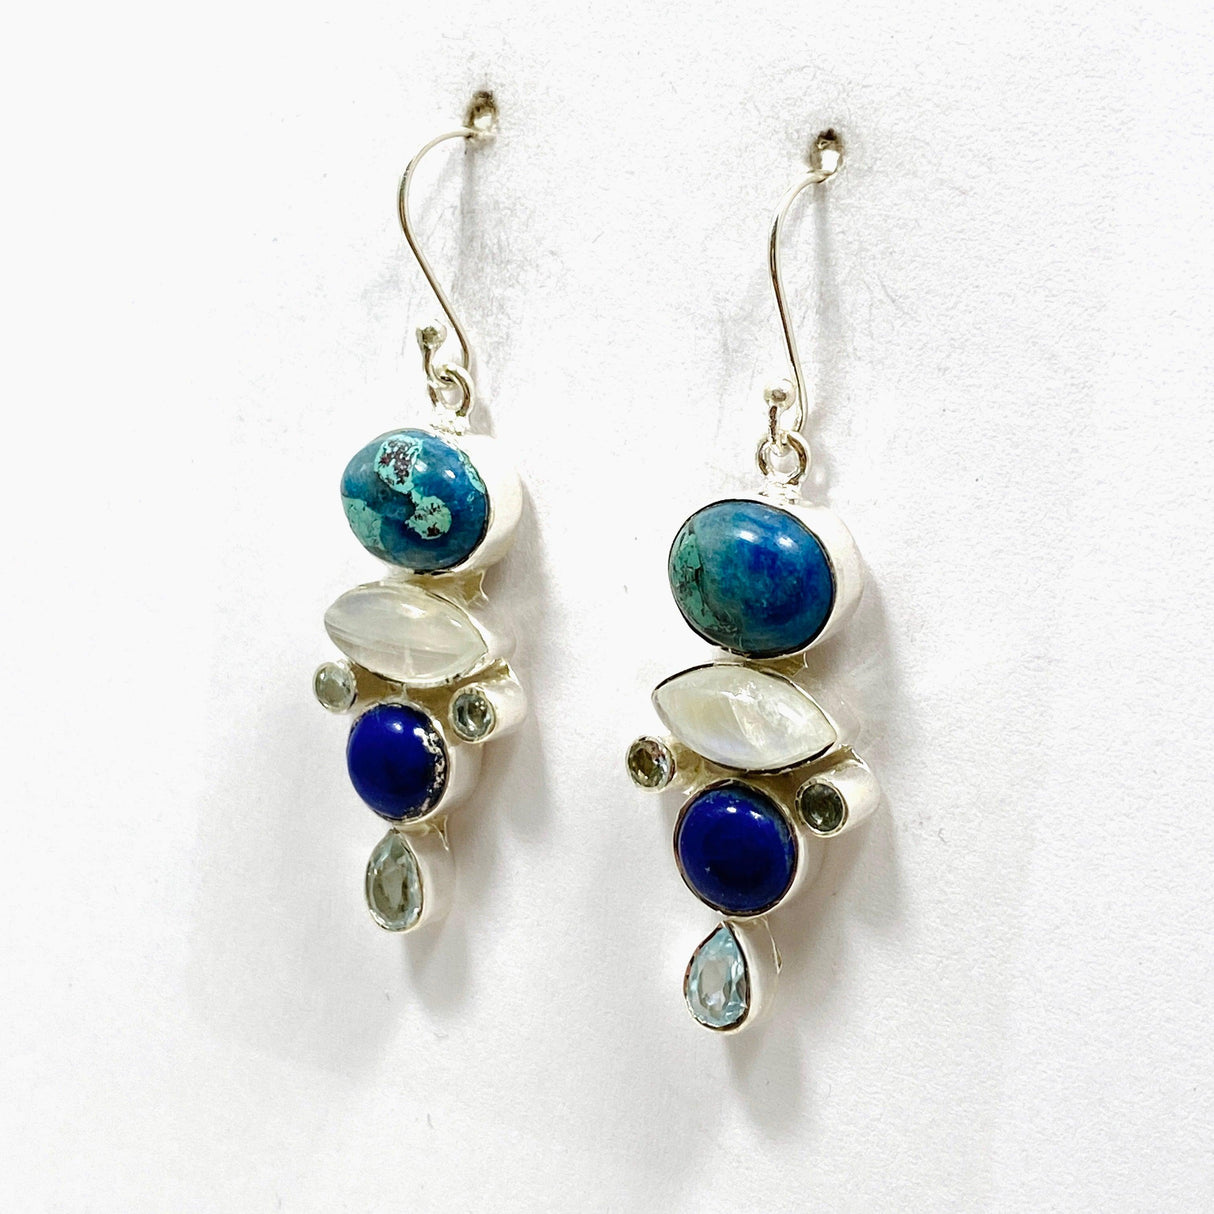 Shattuckite, Lapis Lazuli and Moonstone Multi-stone Earrings KEGJ1445 - Nature's Magick